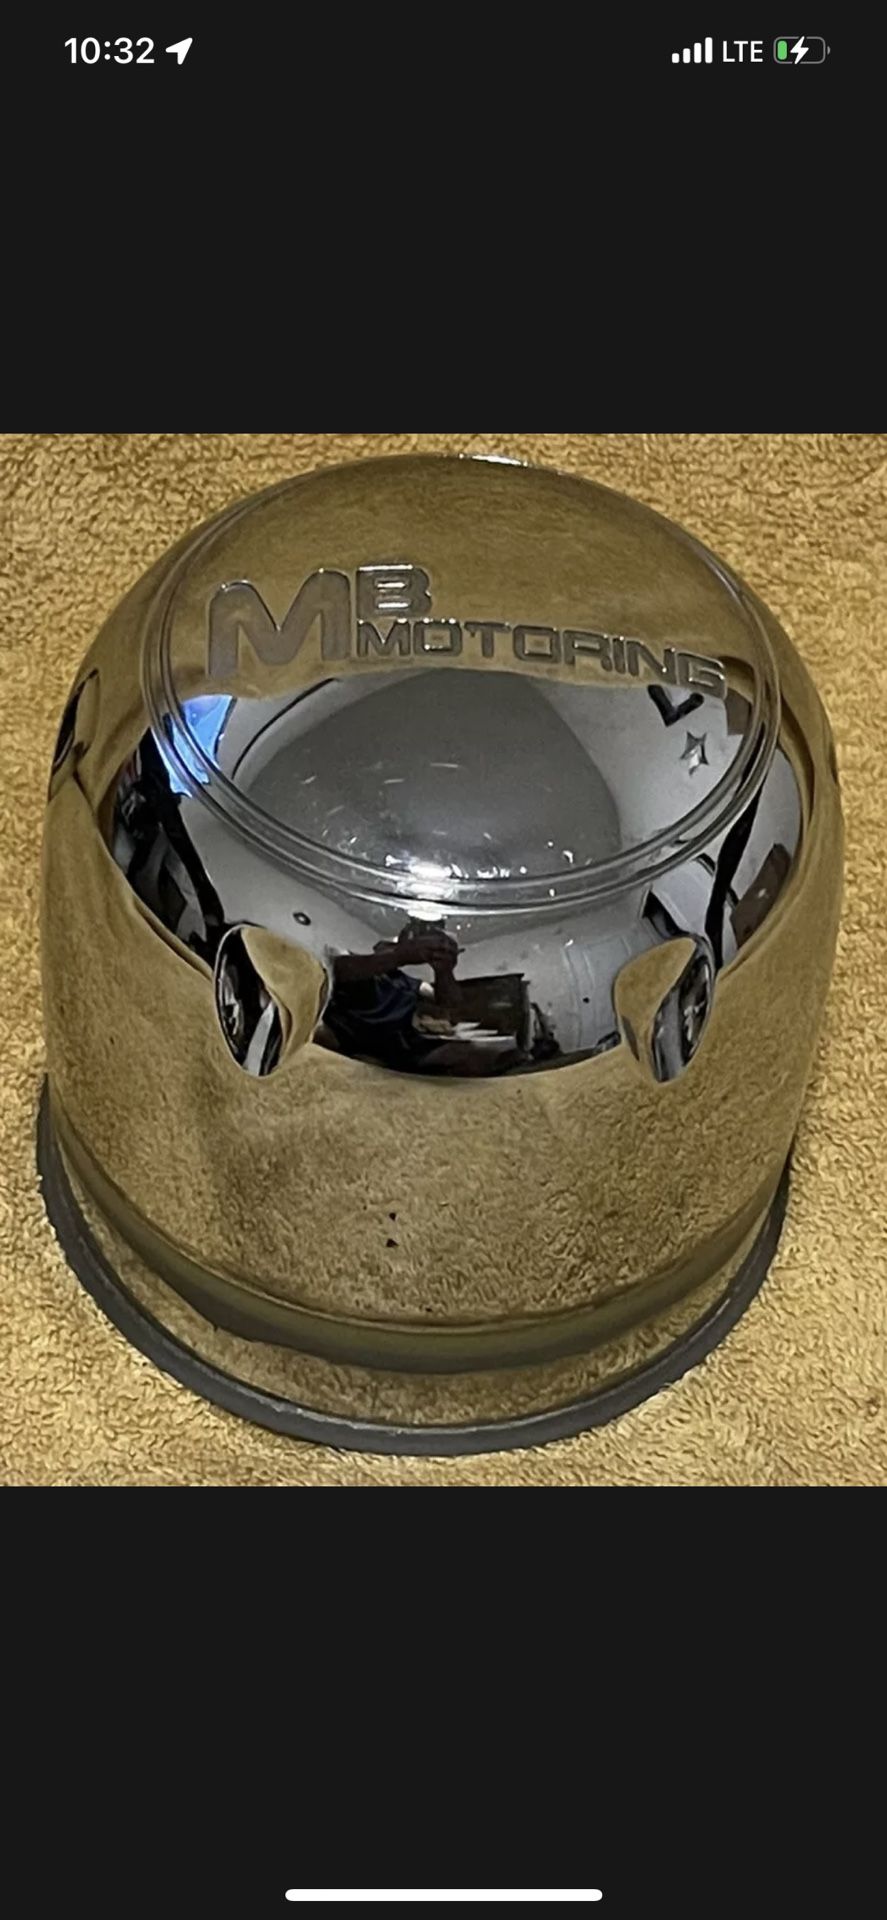 MB Motoring Wheel Rim Chrome Center Cap 2131545 Push Through 8 Lug Hubcap Middle